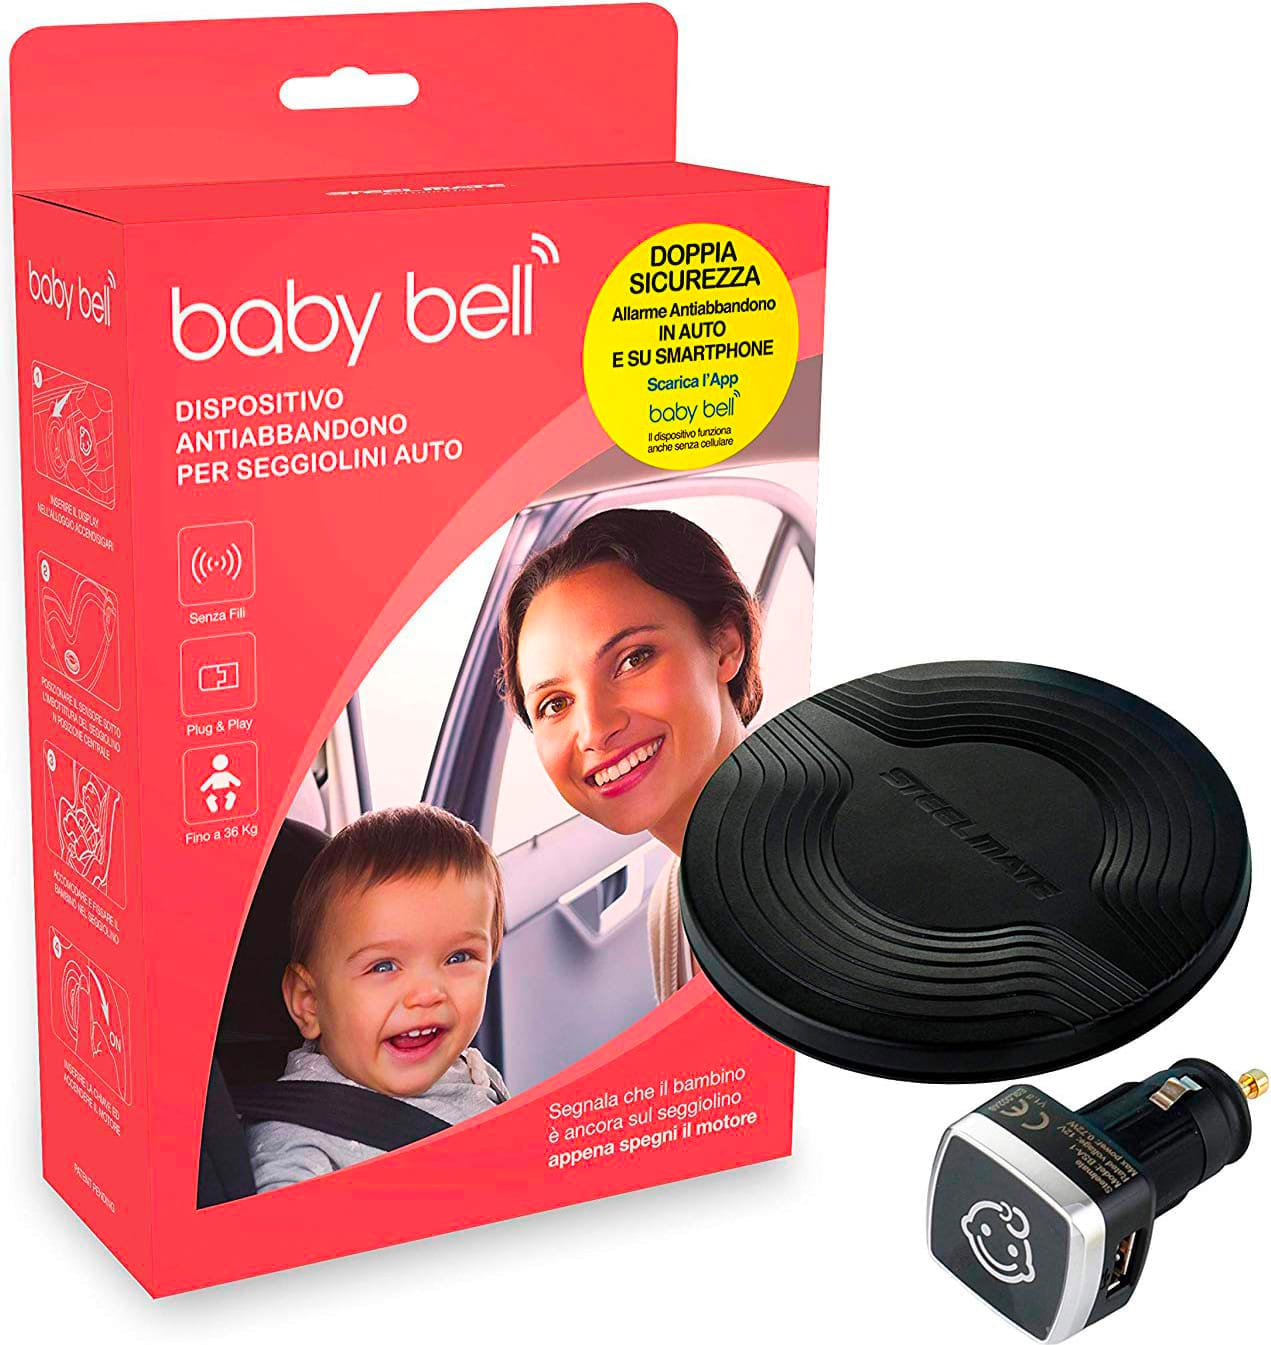 steelmate Bsa-1 Outlet - Dispositivo Anti Abbandono Per Seggiolino Auto Allarme Sonoro E Visivo Compatibile Android/ios - Bsa-1 Baby Bell